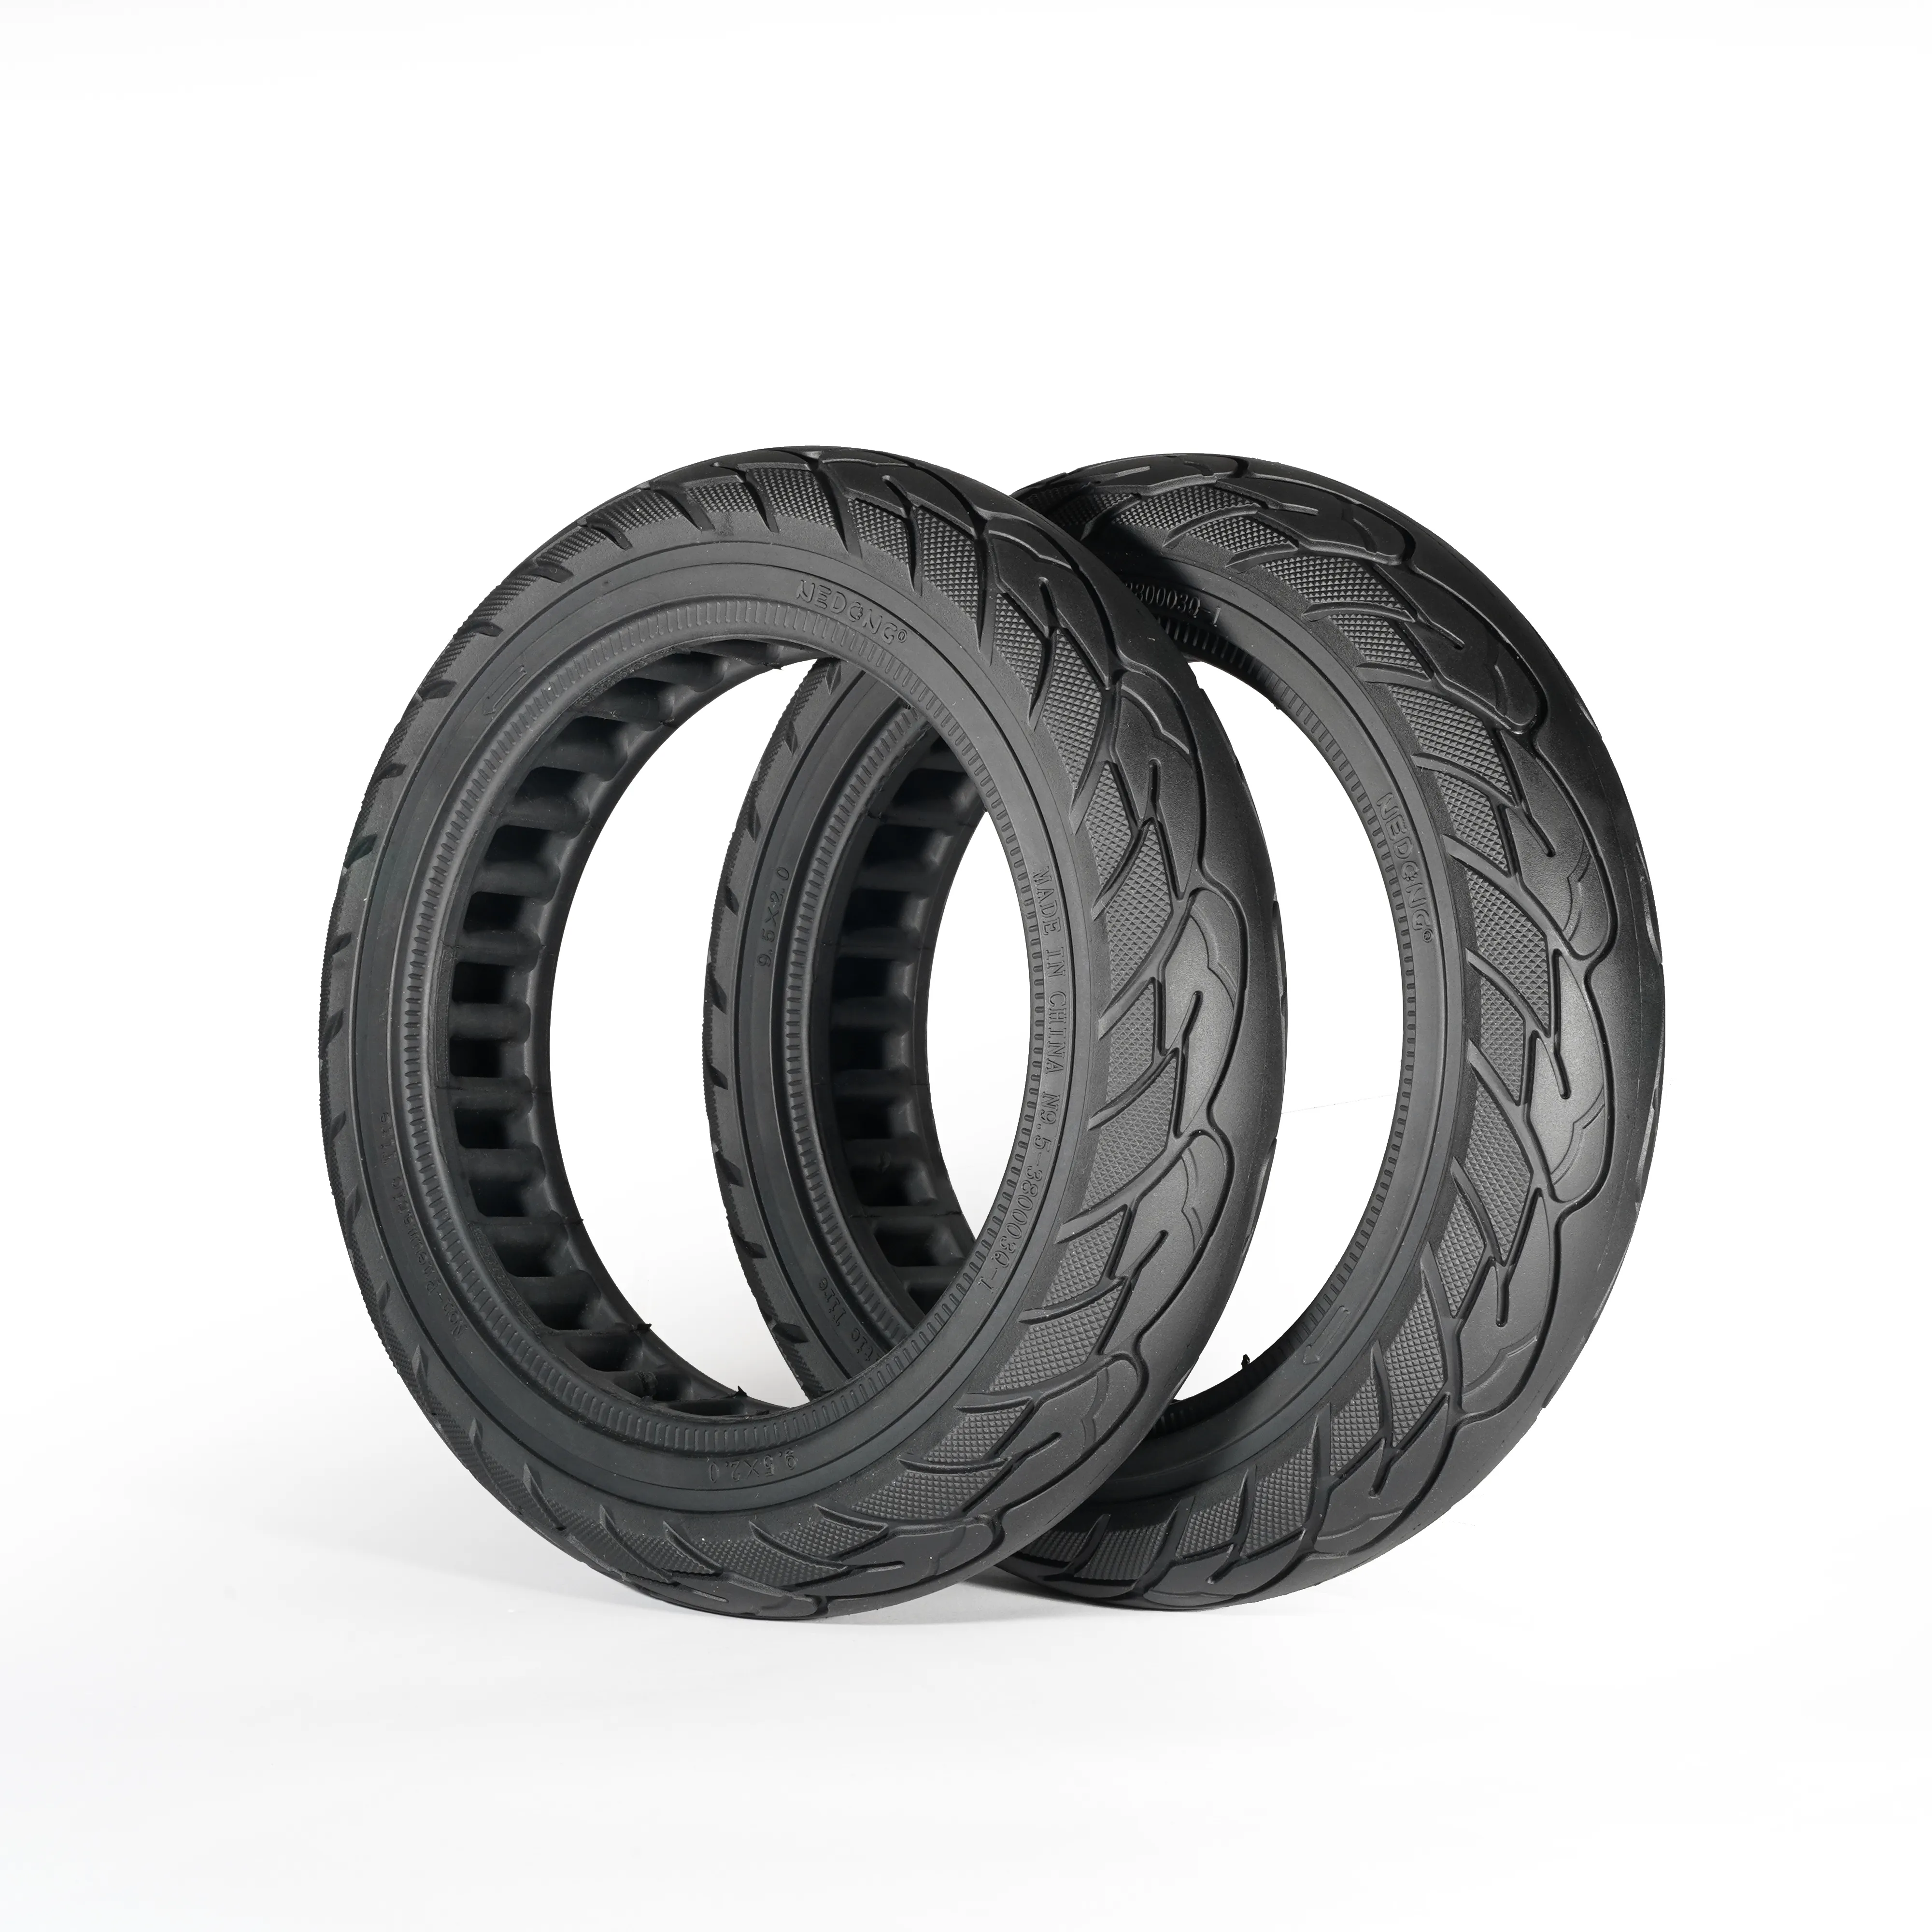 Feisken pneu elétrico não pneumático, pneu t1/t1 pro scooter apropriado 9.5 polegadas 9.5x2.0